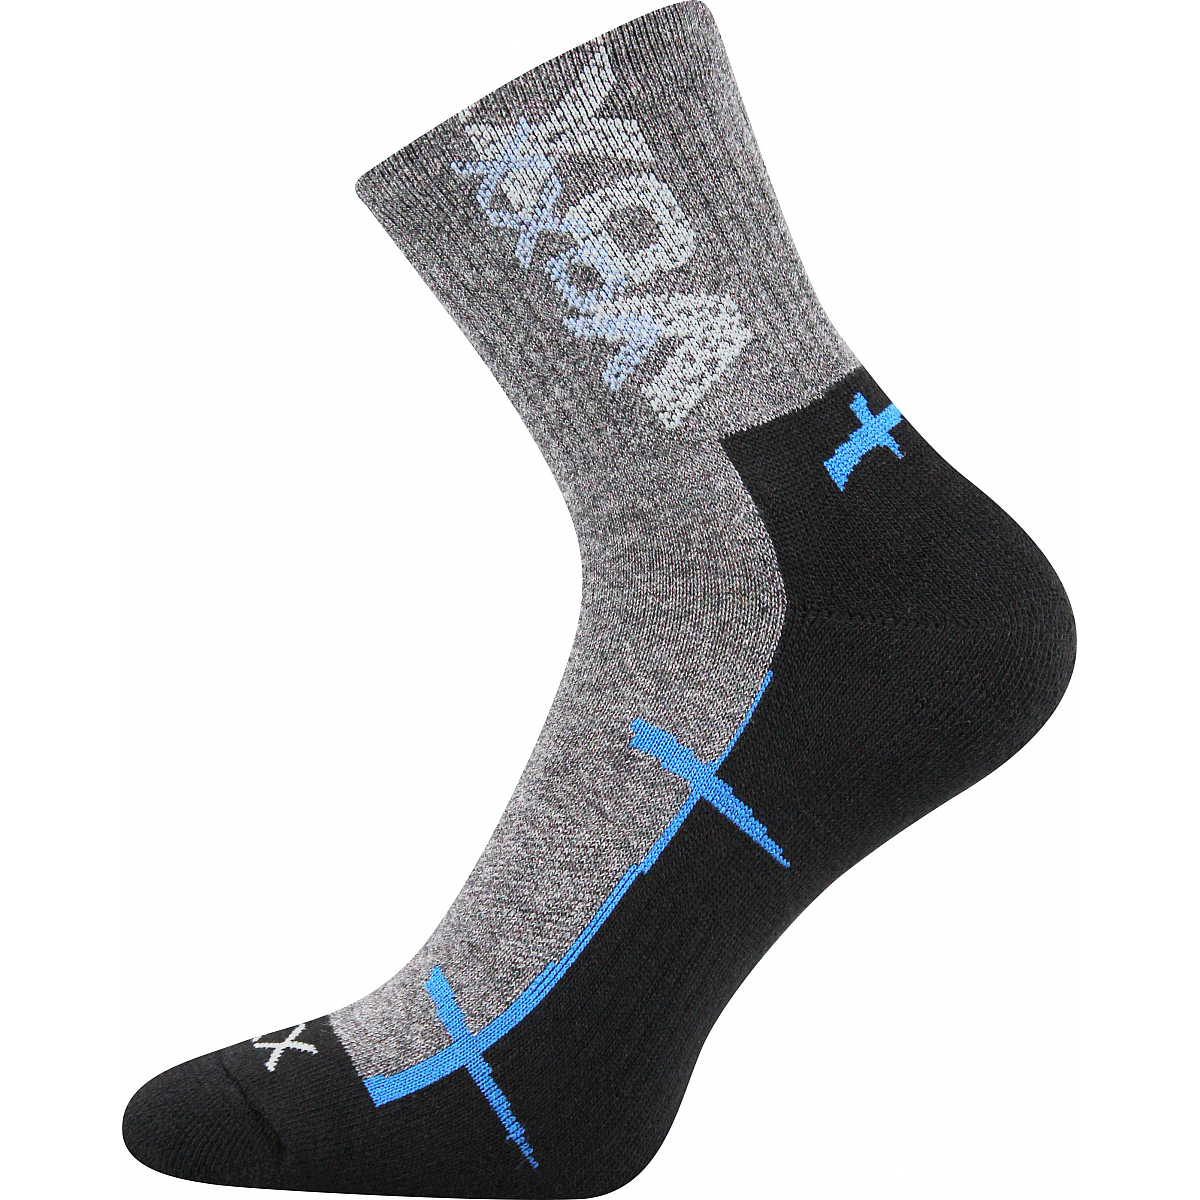 Sportovní ponožky Voxx Walli - šedé-černé, 39-42